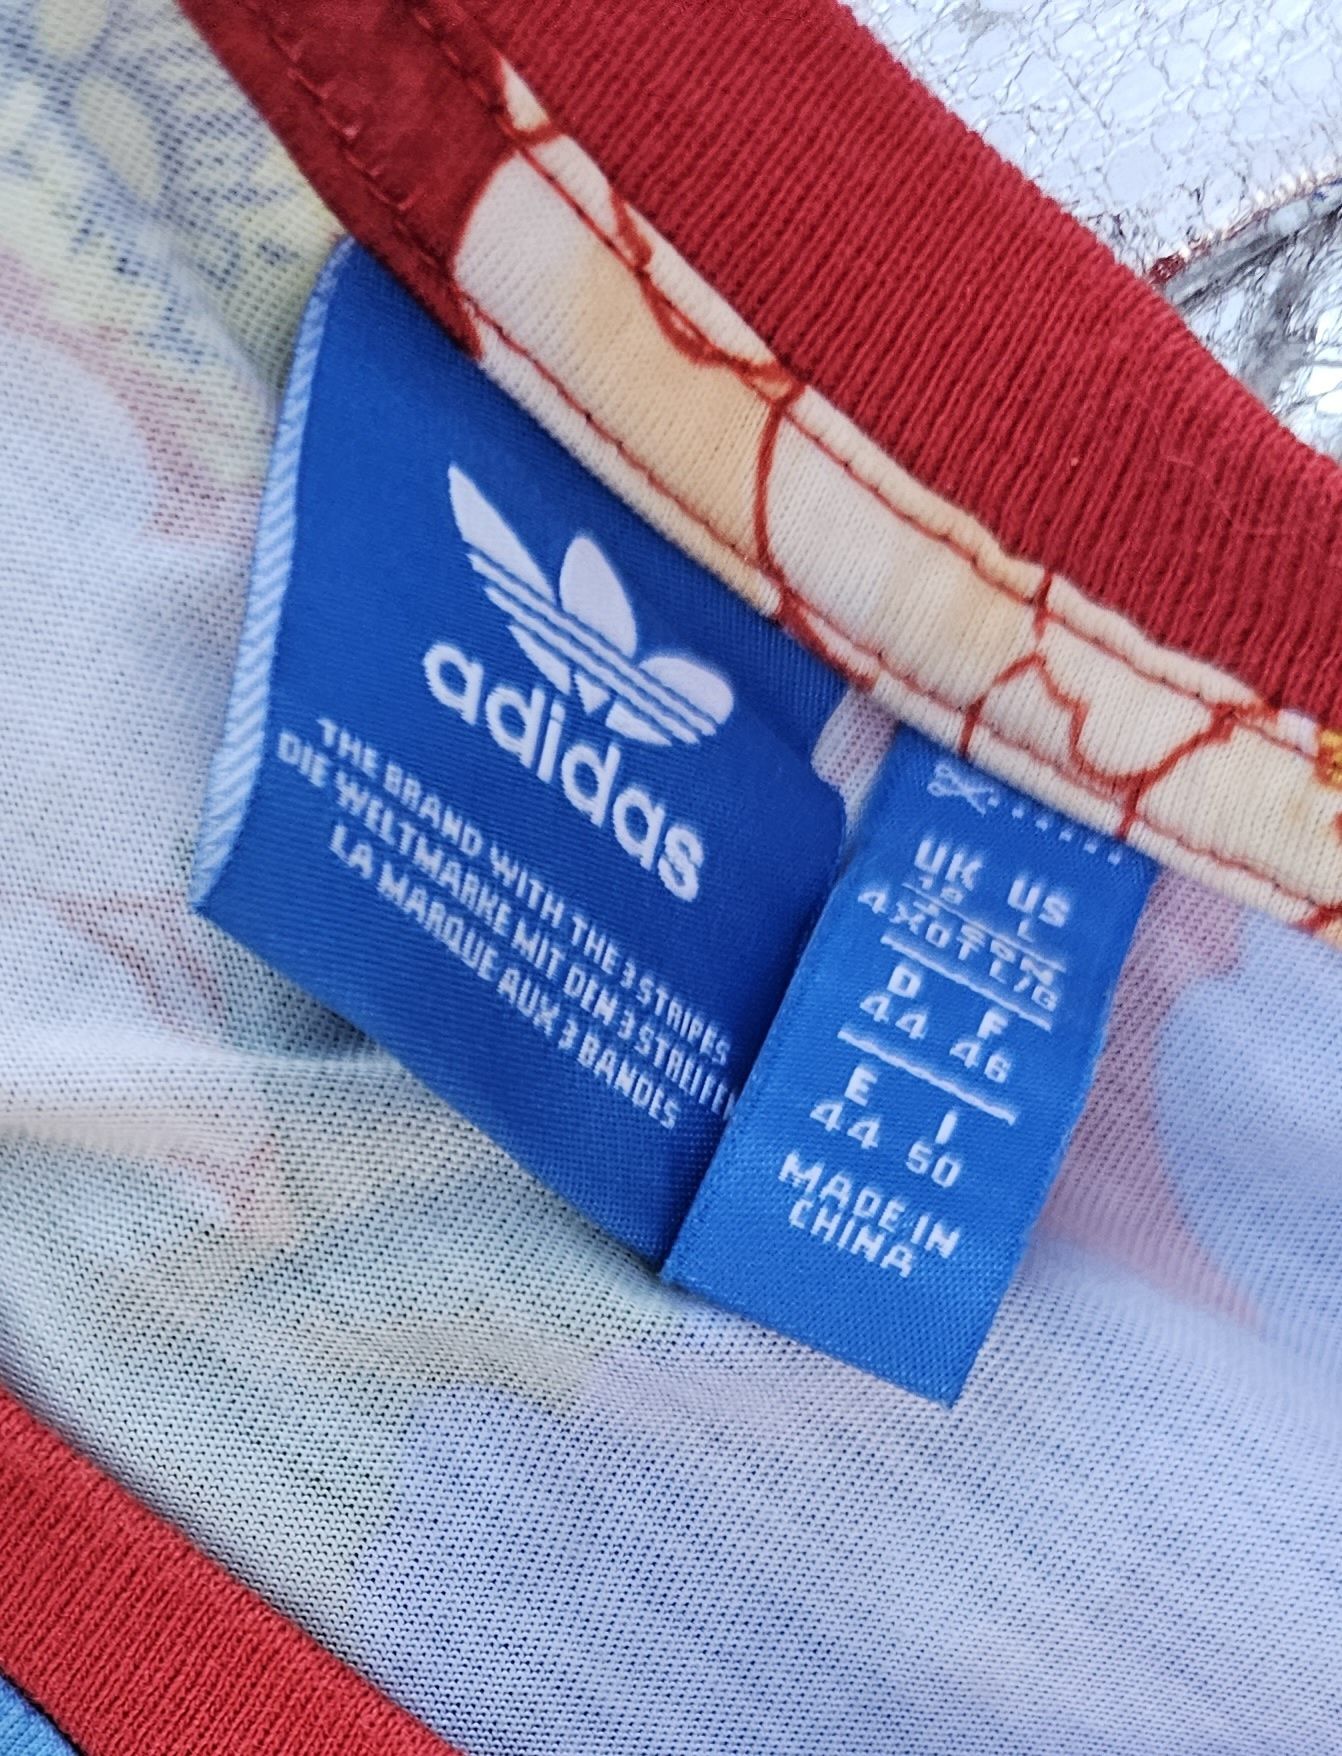 Adidas уникална оригинална дамска тениска лимитирана серия Л/Хл размер